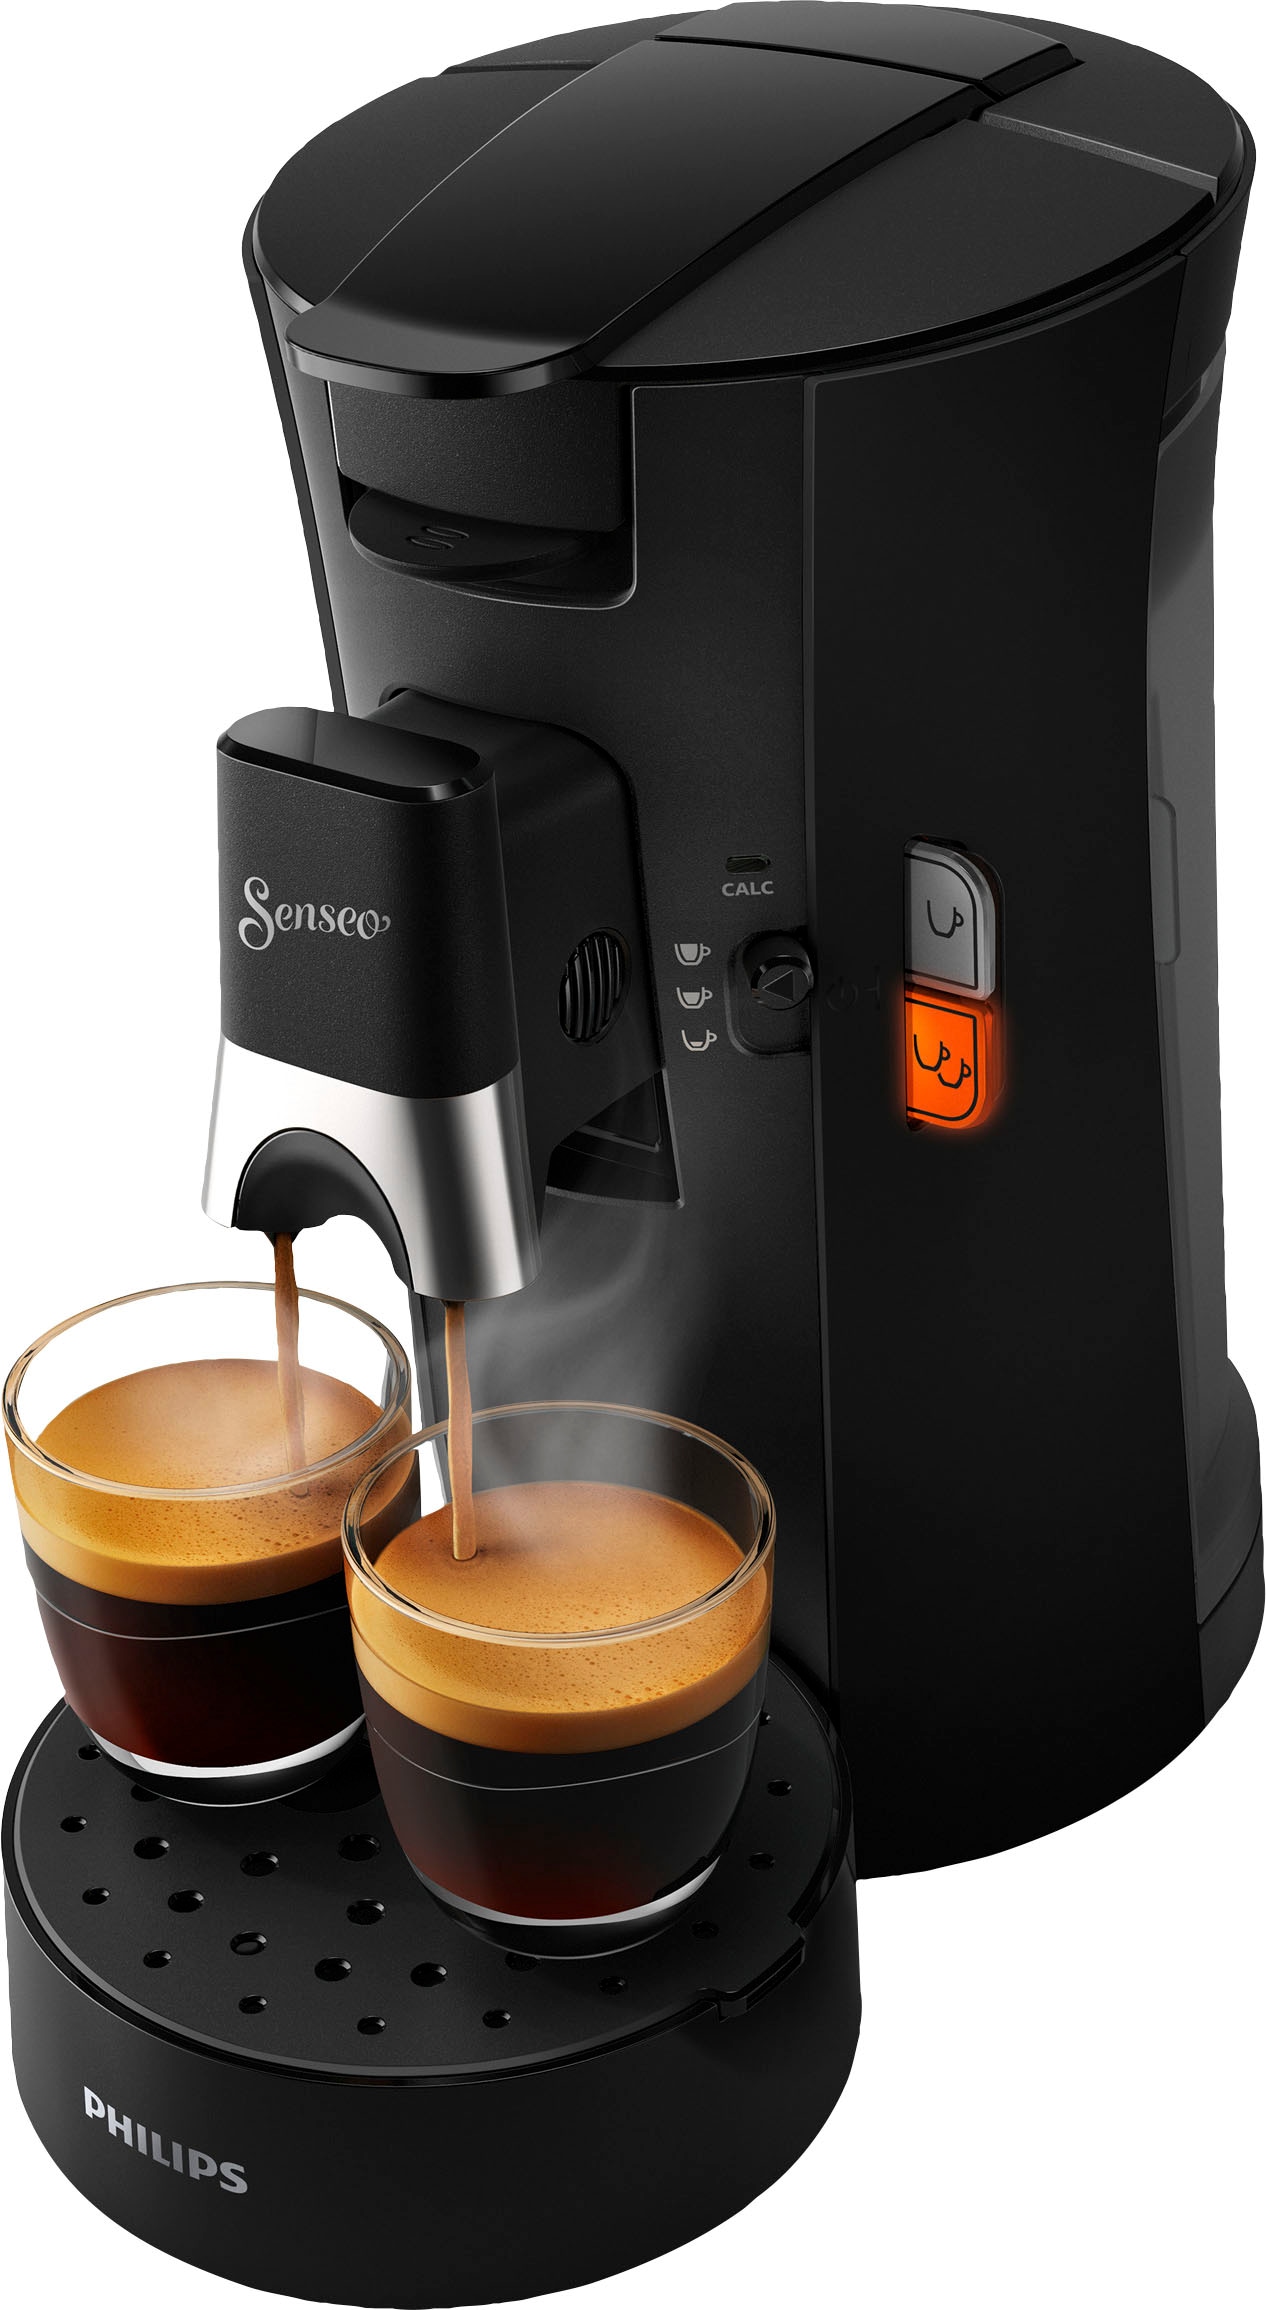 Philips Senseo Kaffeepadmaschine »Select CSA230/69, aus 21% recyceltem Plastik«, Crema Plus, 100 Senseo Pads kaufen und bis zu 33 € zurückerhalten